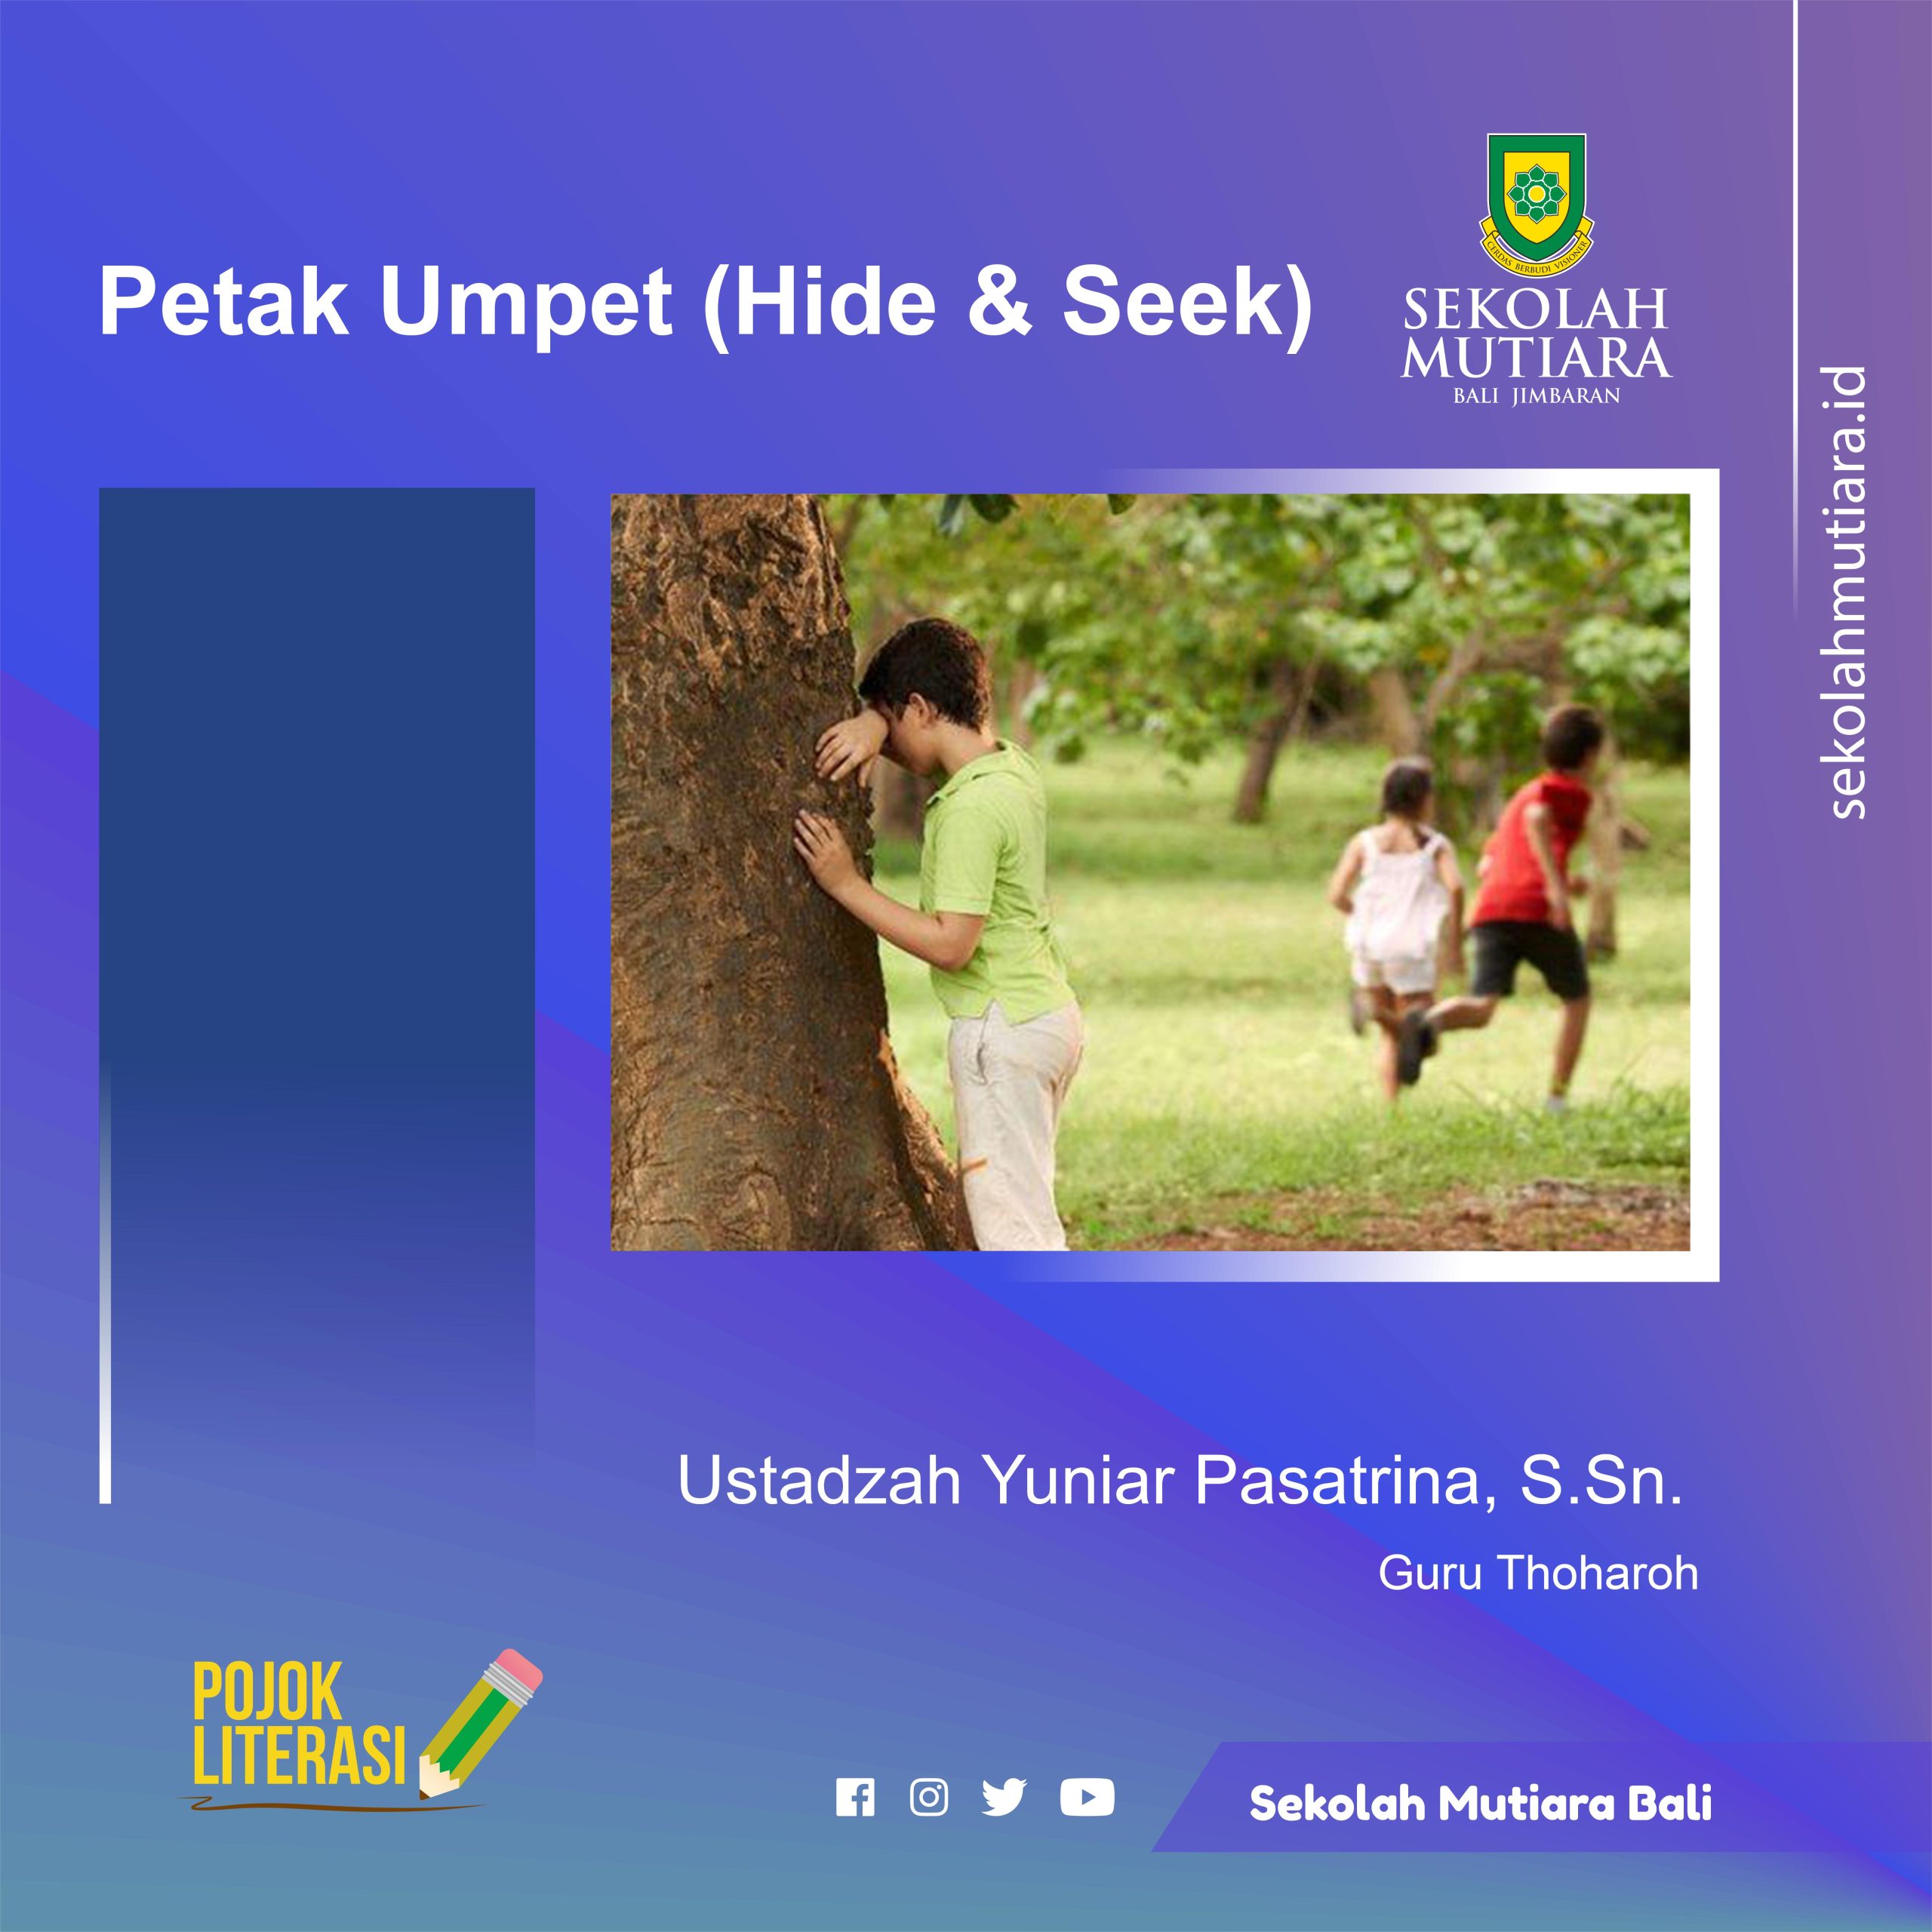 Petak Umpet (Hide & Seek)